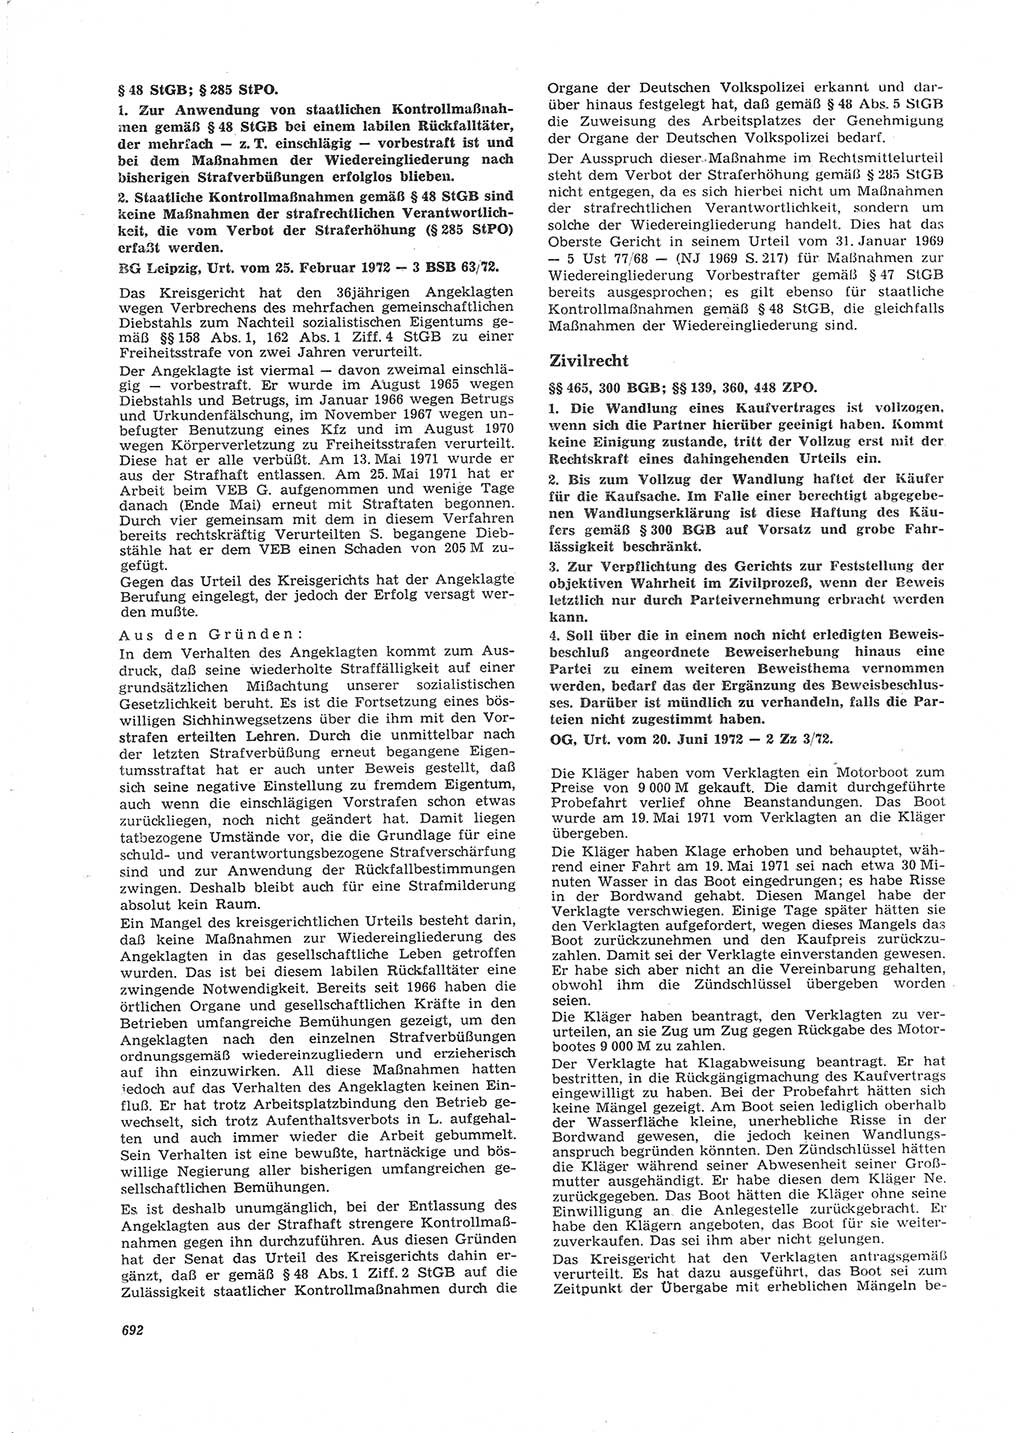 Neue Justiz (NJ), Zeitschrift für Recht und Rechtswissenschaft [Deutsche Demokratische Republik (DDR)], 26. Jahrgang 1972, Seite 692 (NJ DDR 1972, S. 692)